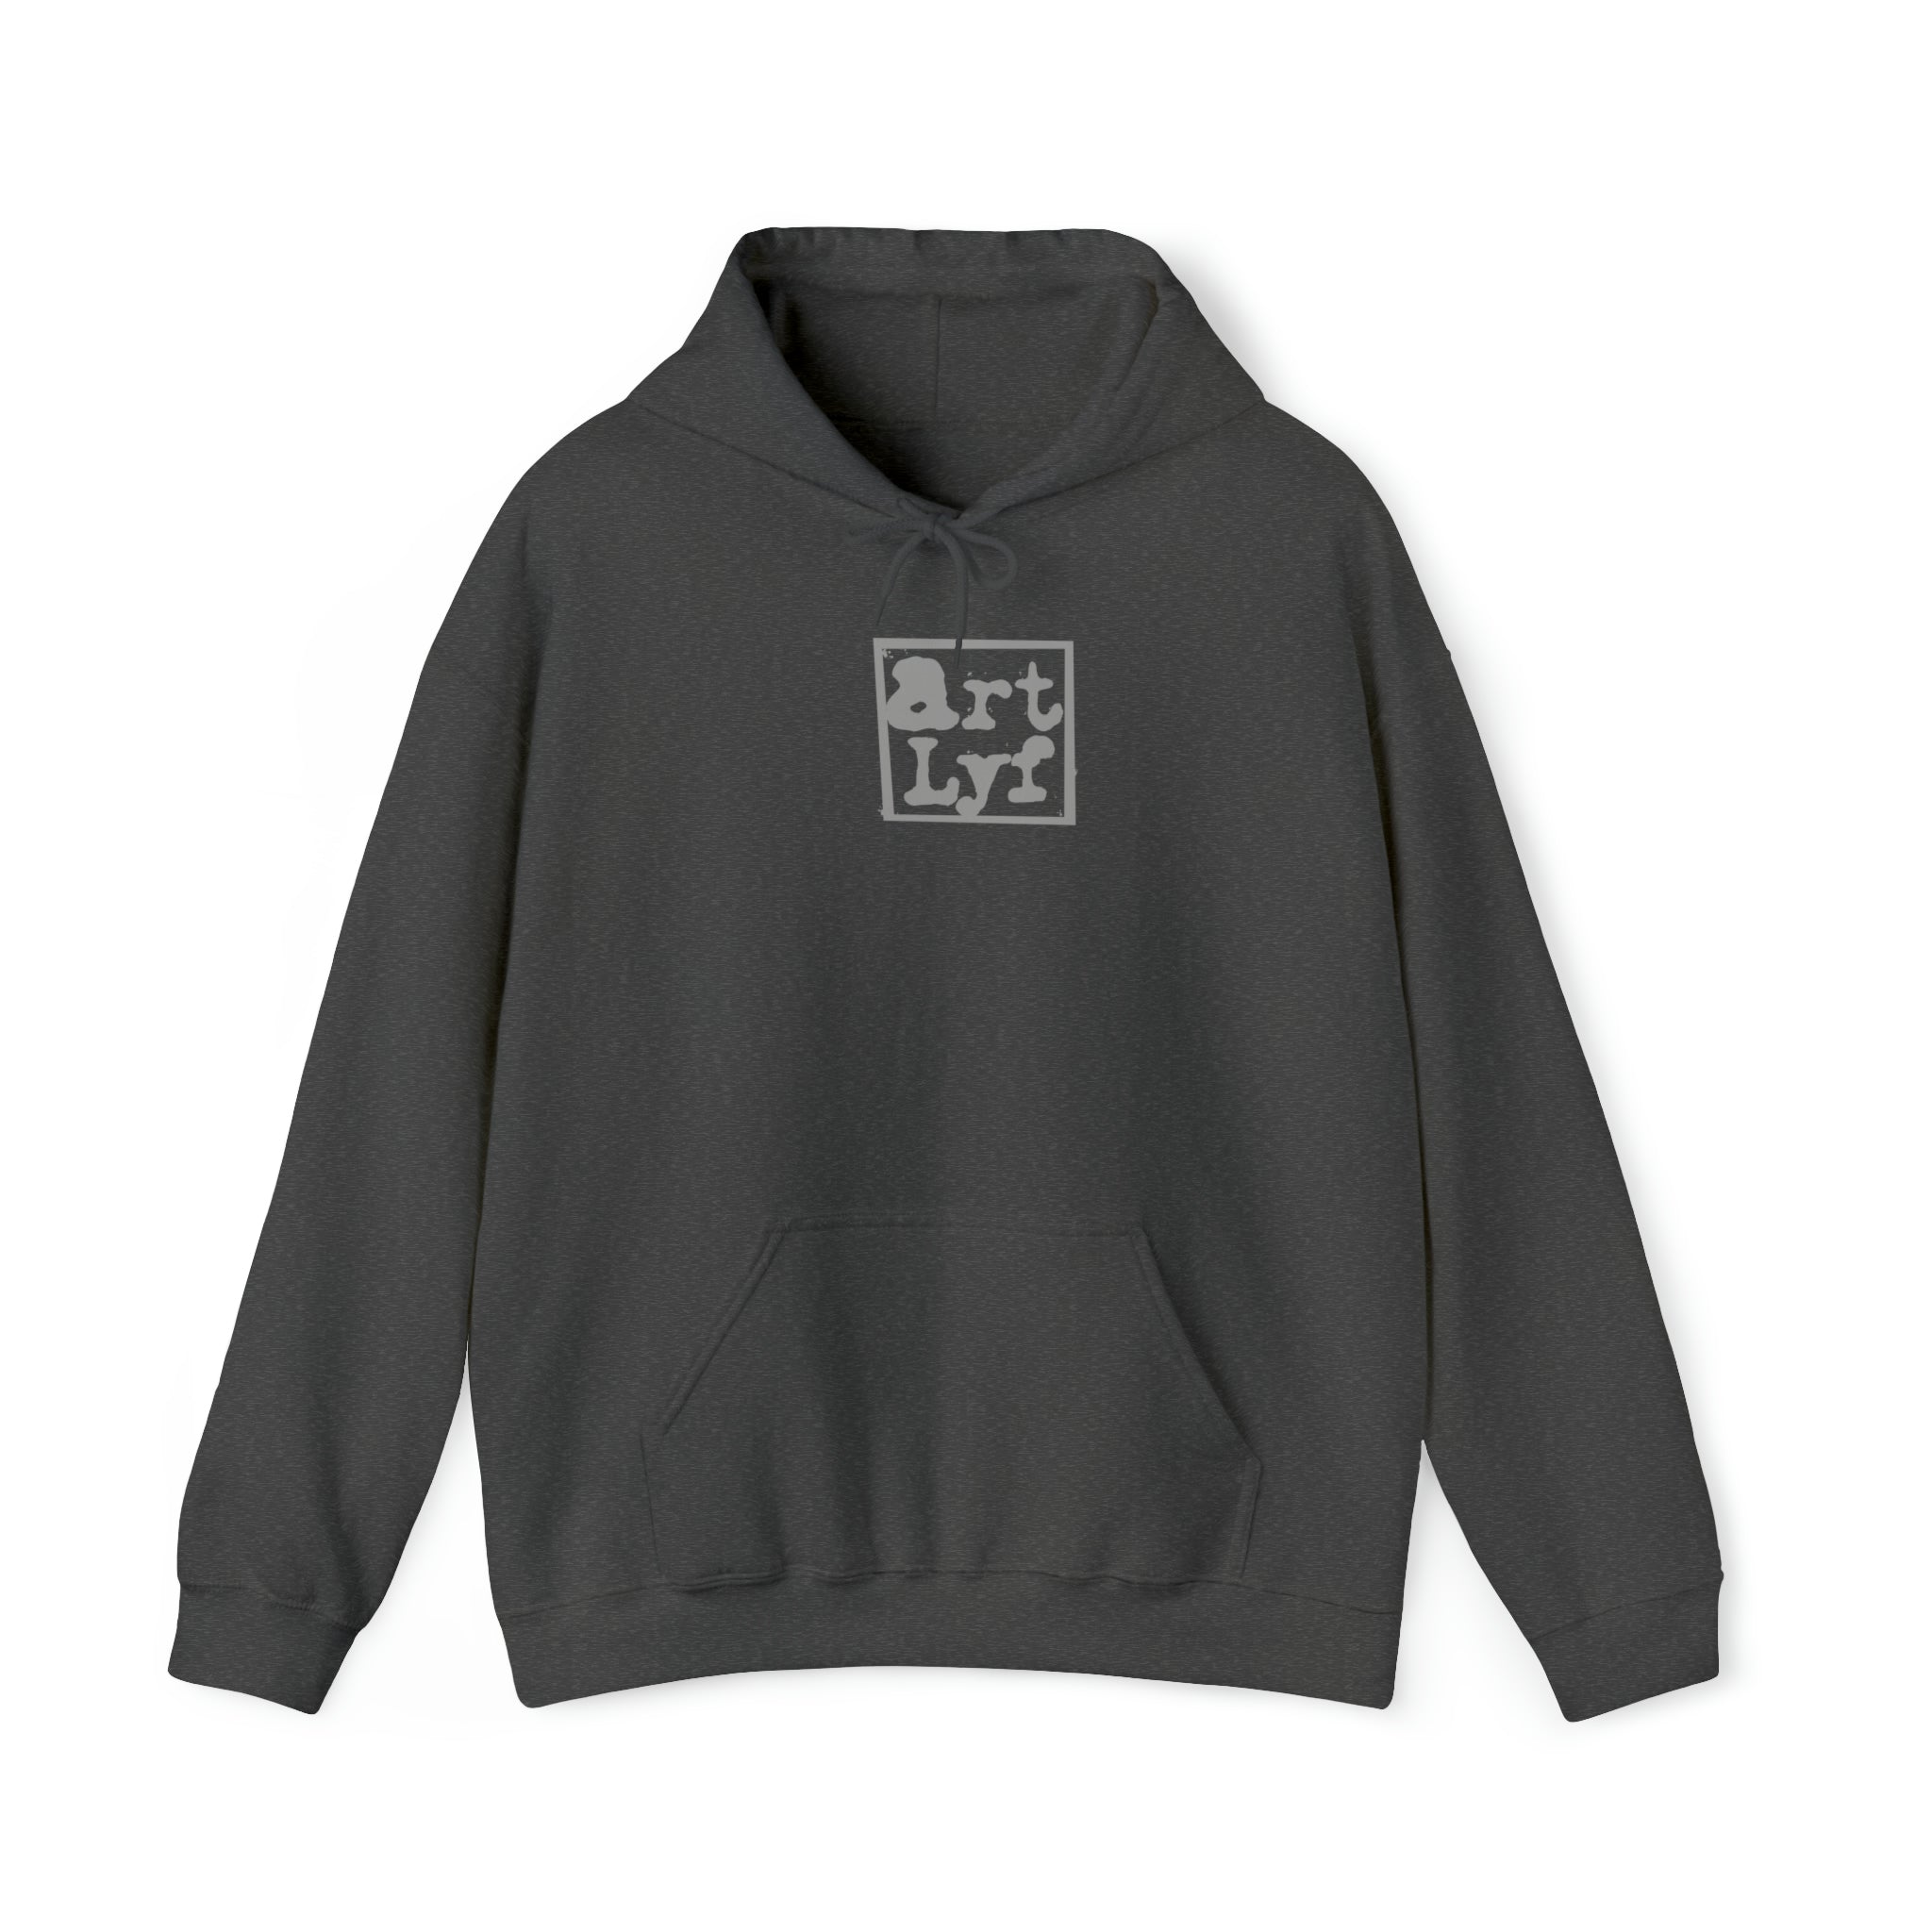 Art Lyf Logo Unisex Heavy Blend™ Hooded Sweatshirt